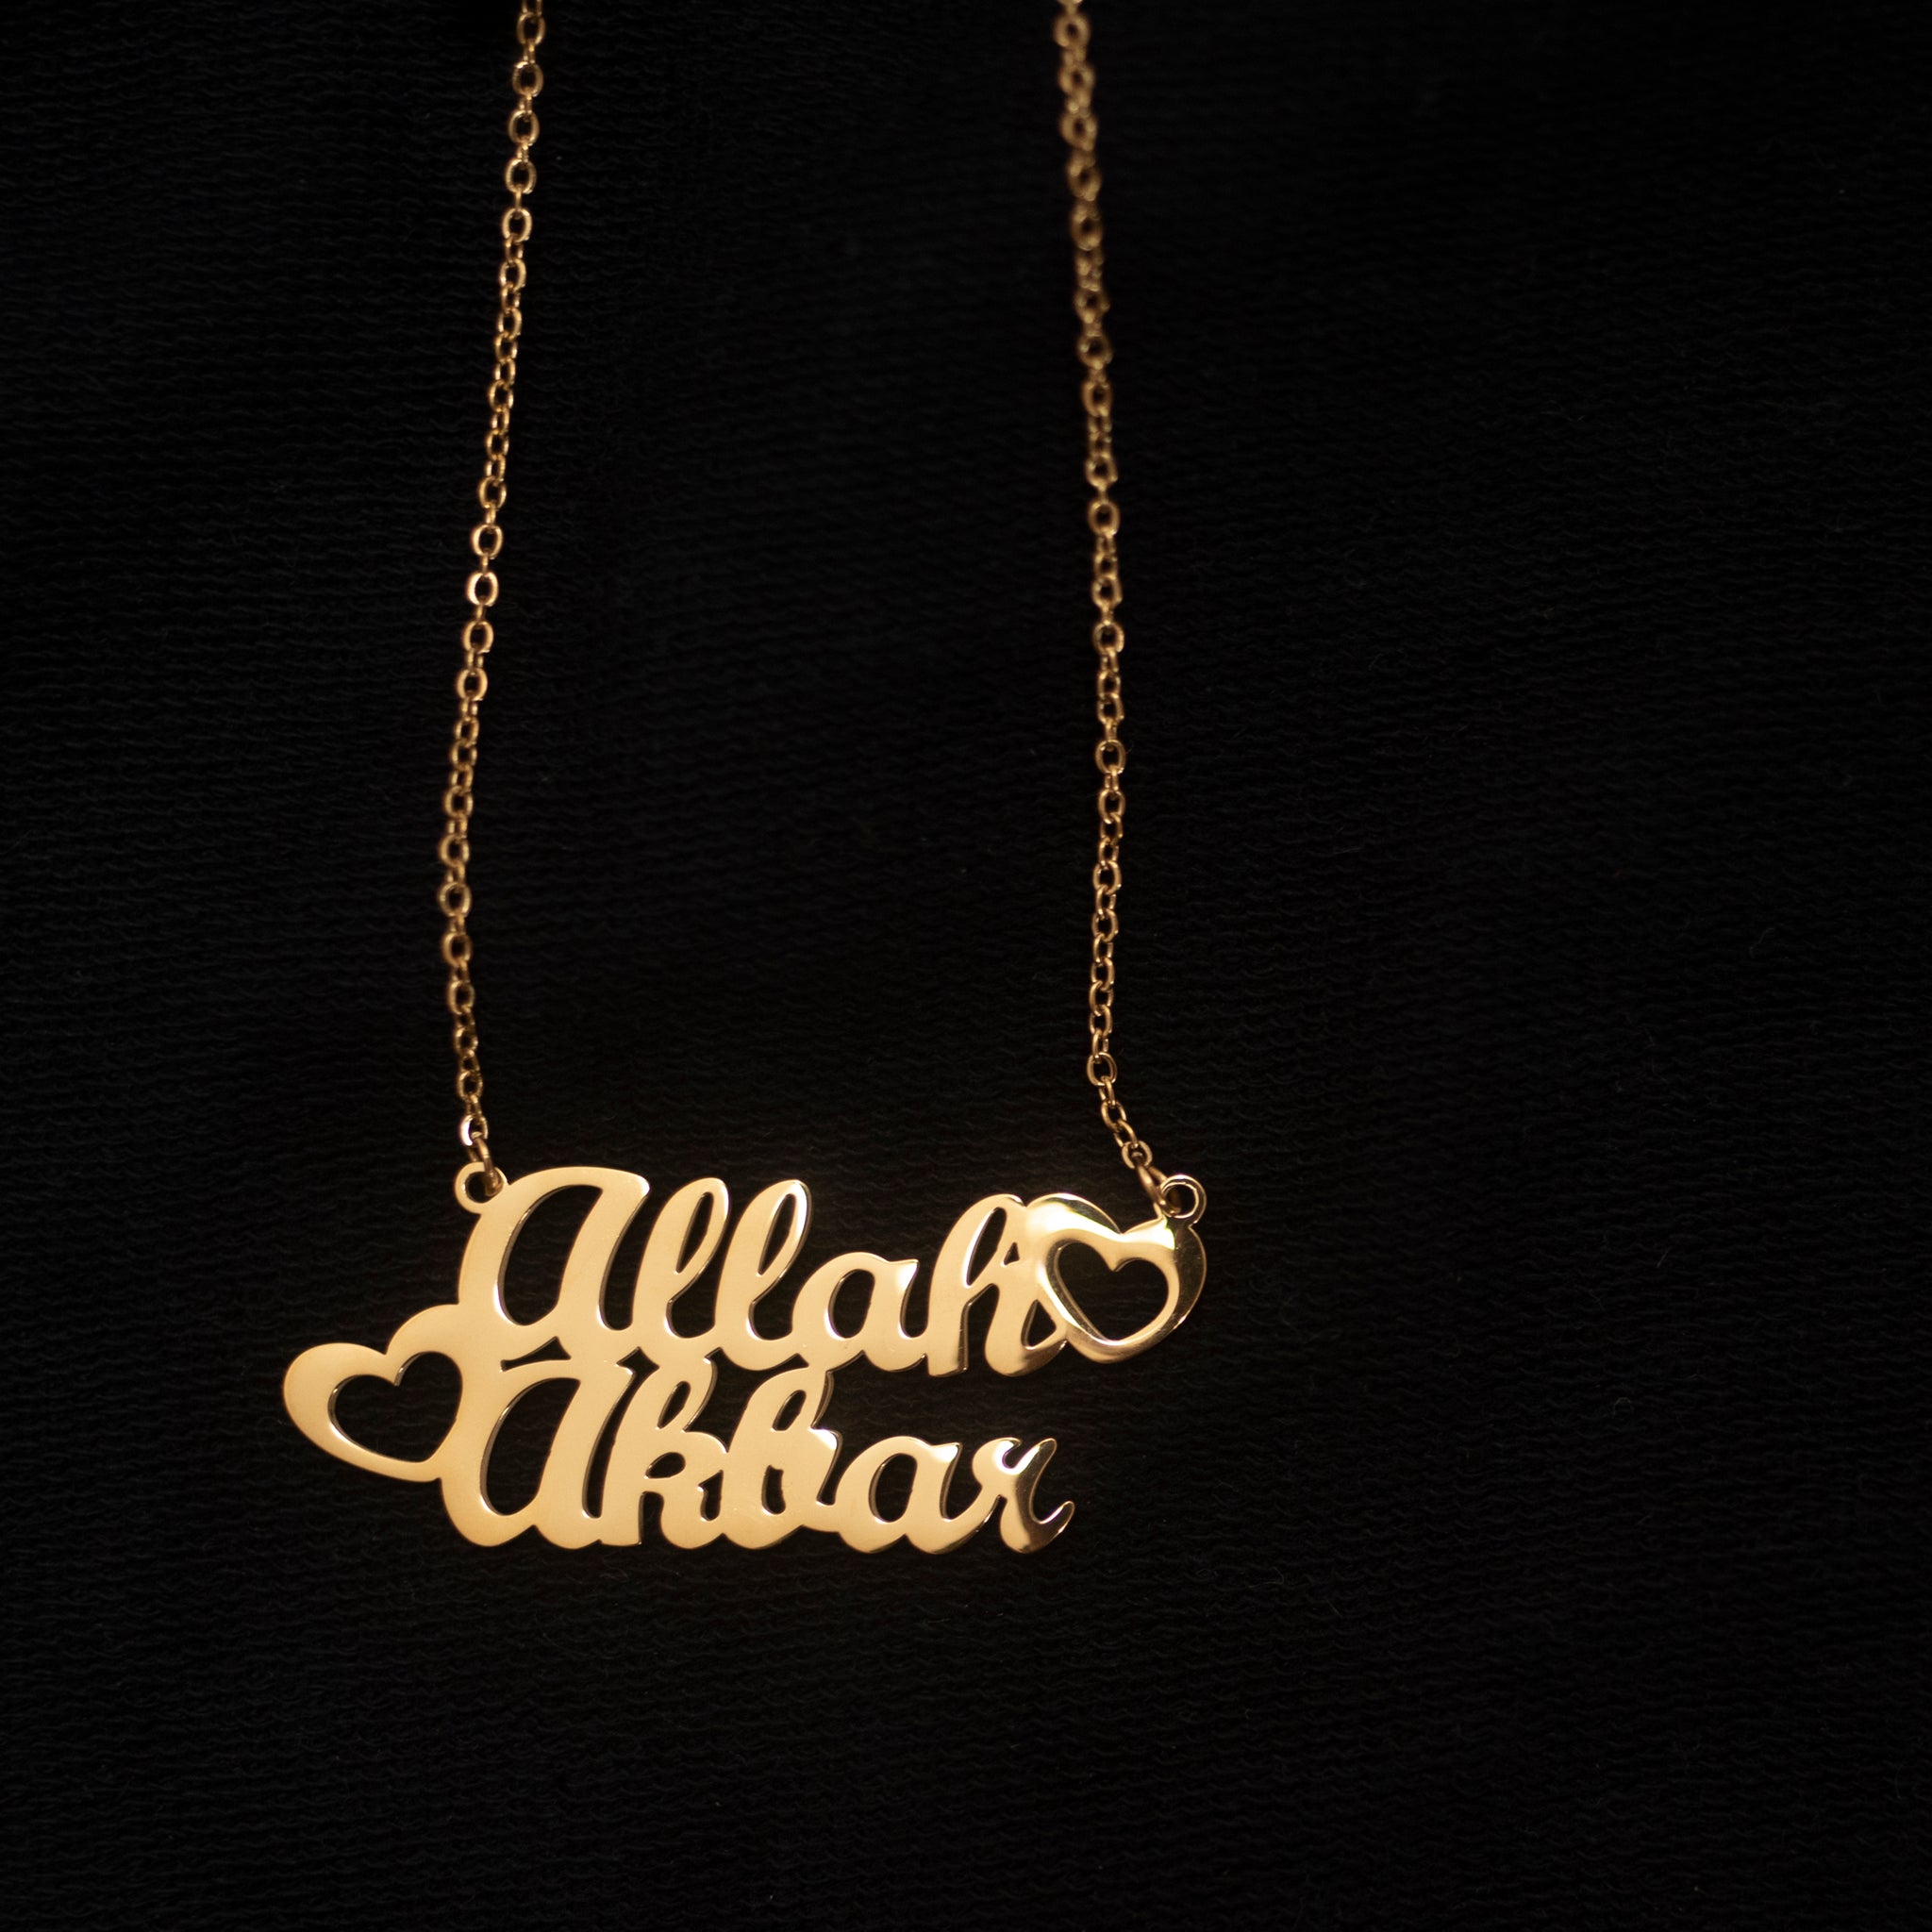 The Allah Akbar Necklace